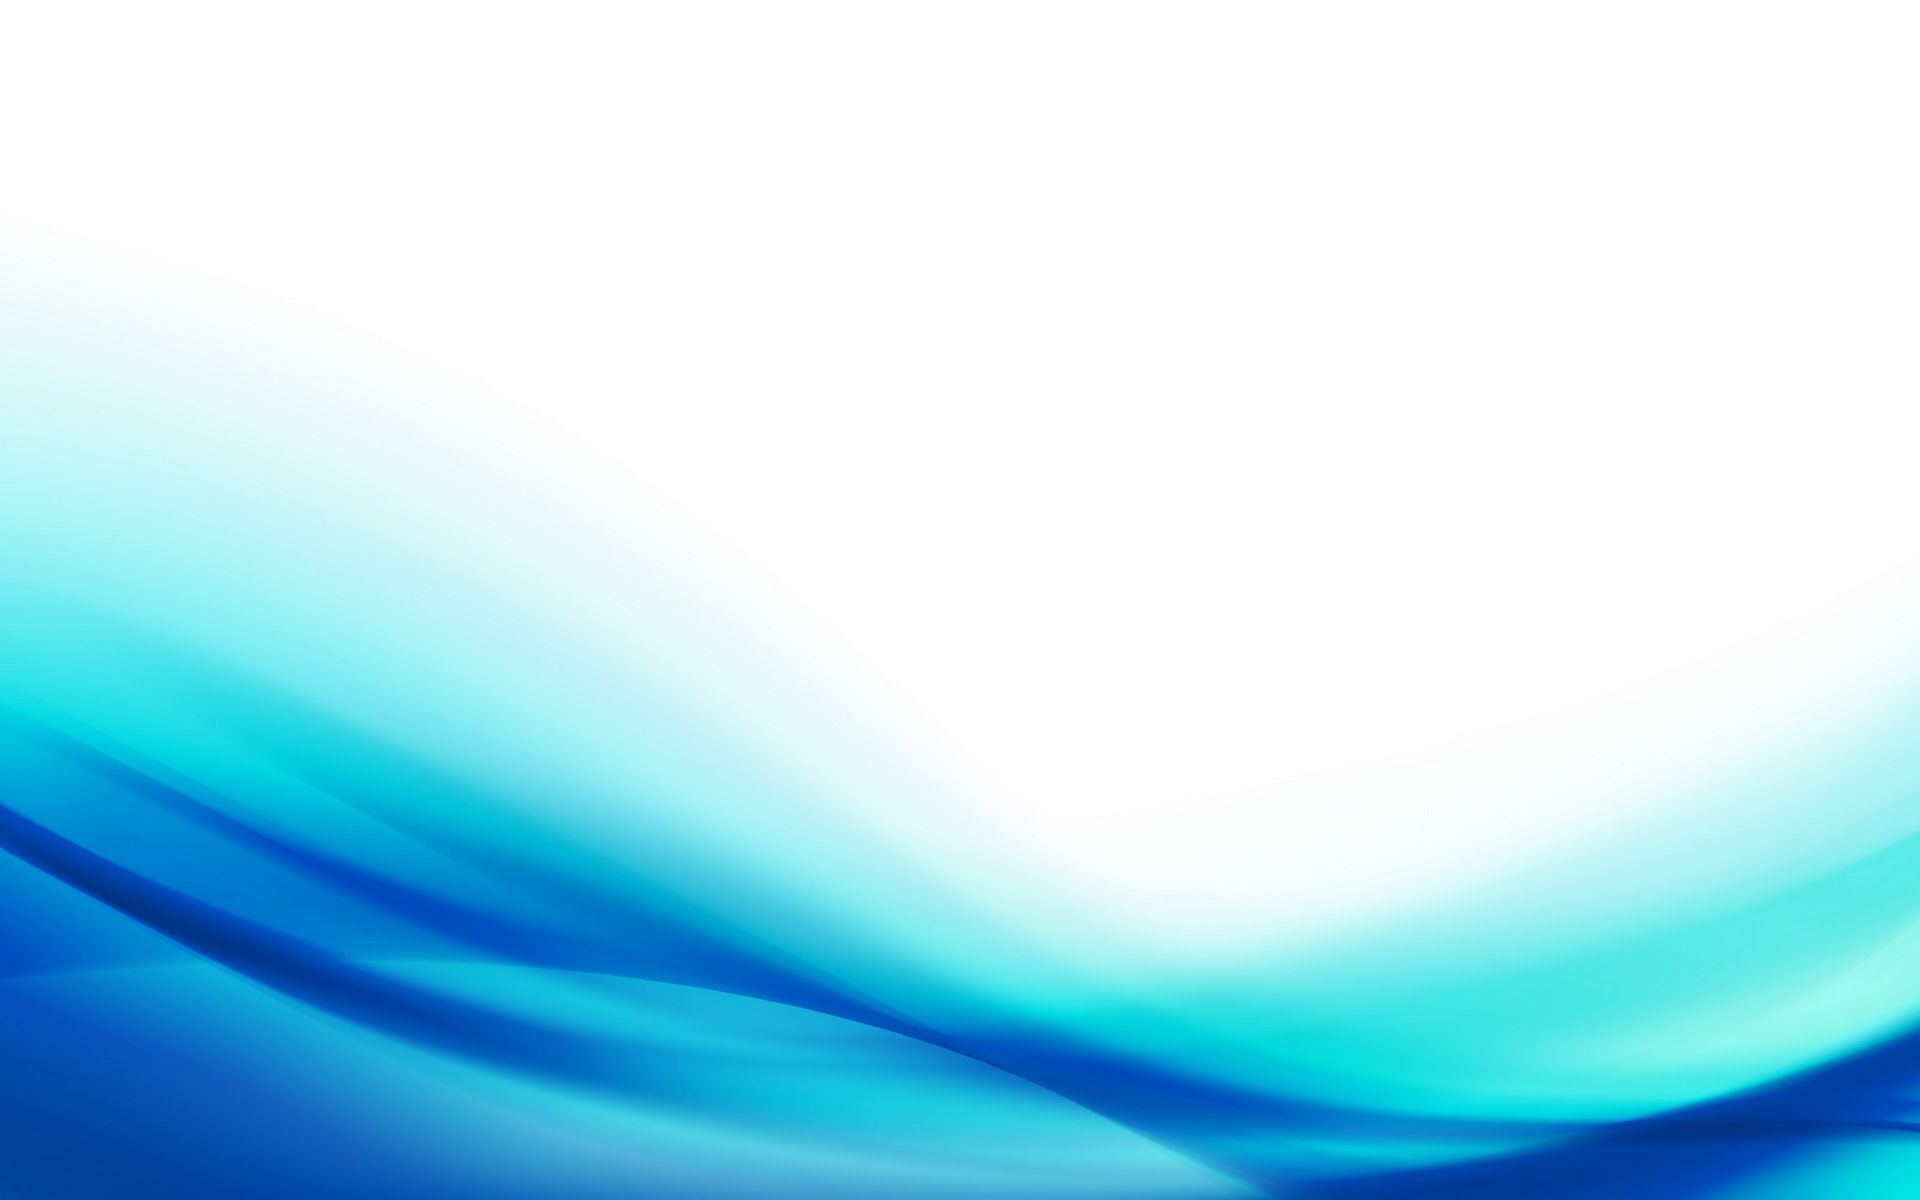 Aqua Blue Desktop Wallpaper Wallpaper HD. Blue background wallpaper, Simple background design, Blue wallpaper